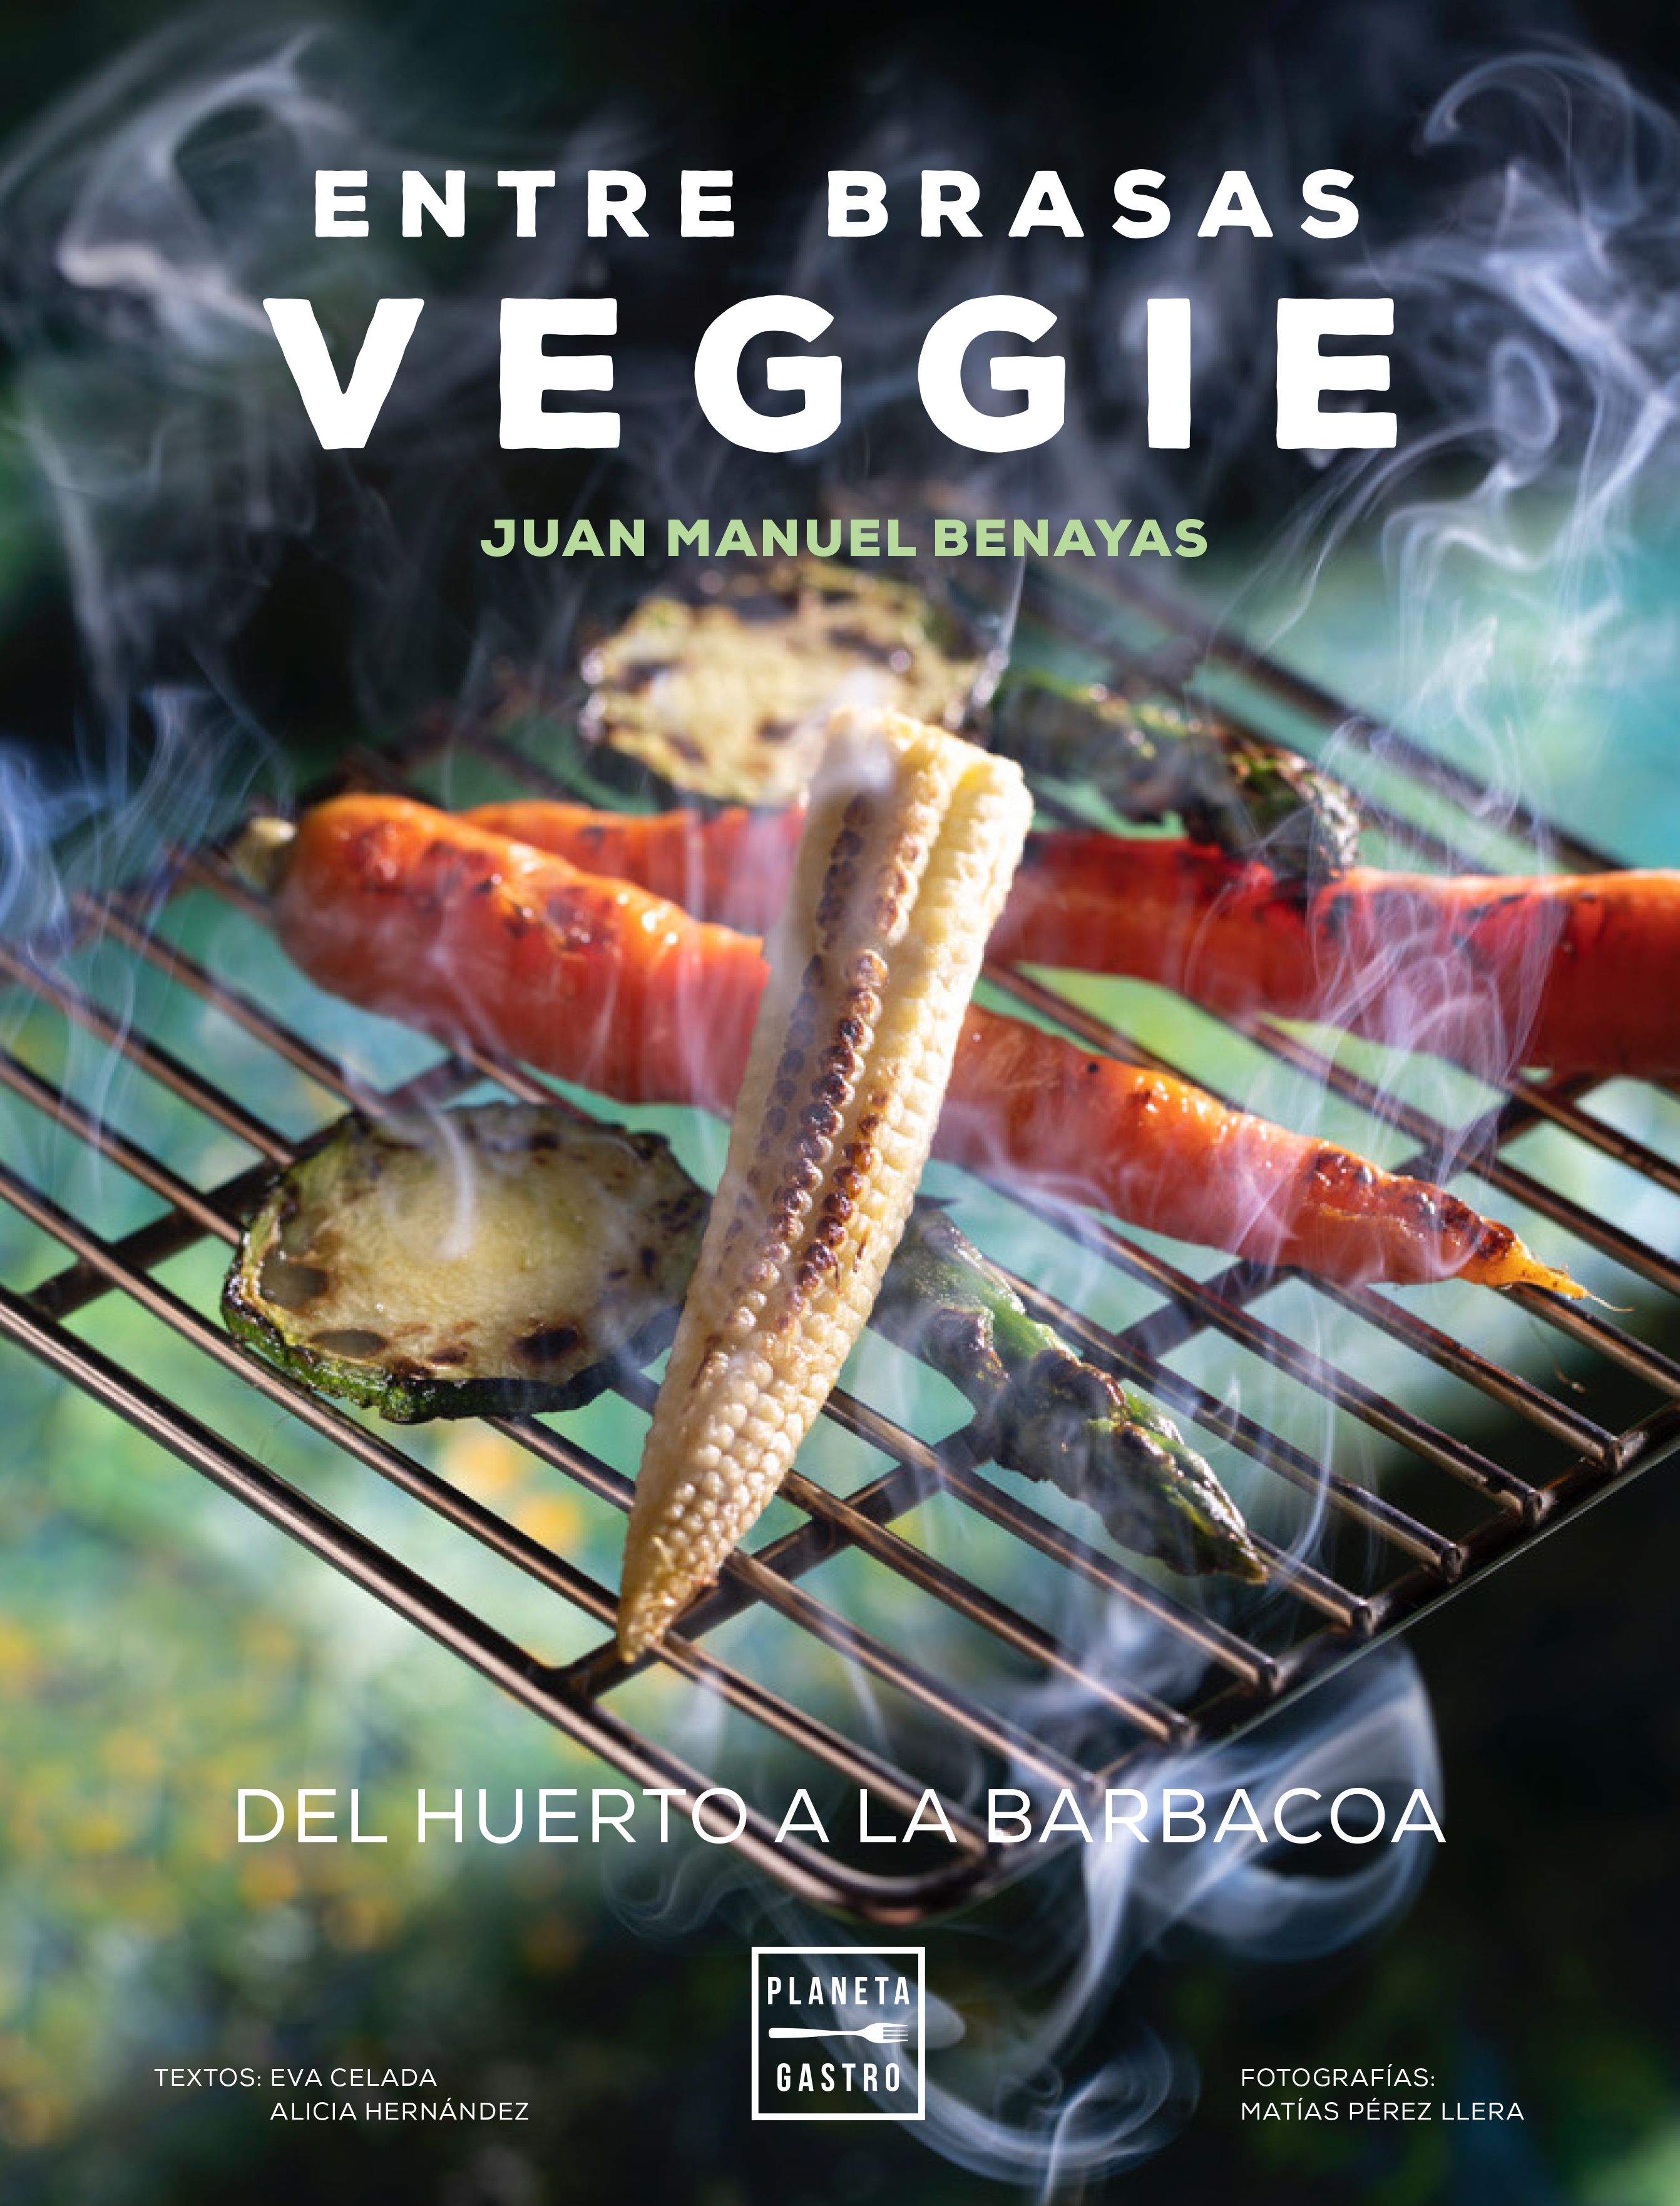 ENTRE BRASAS VEGGIE el nuevo libro de Juan Manuel Benayas, ya disponible para reserva